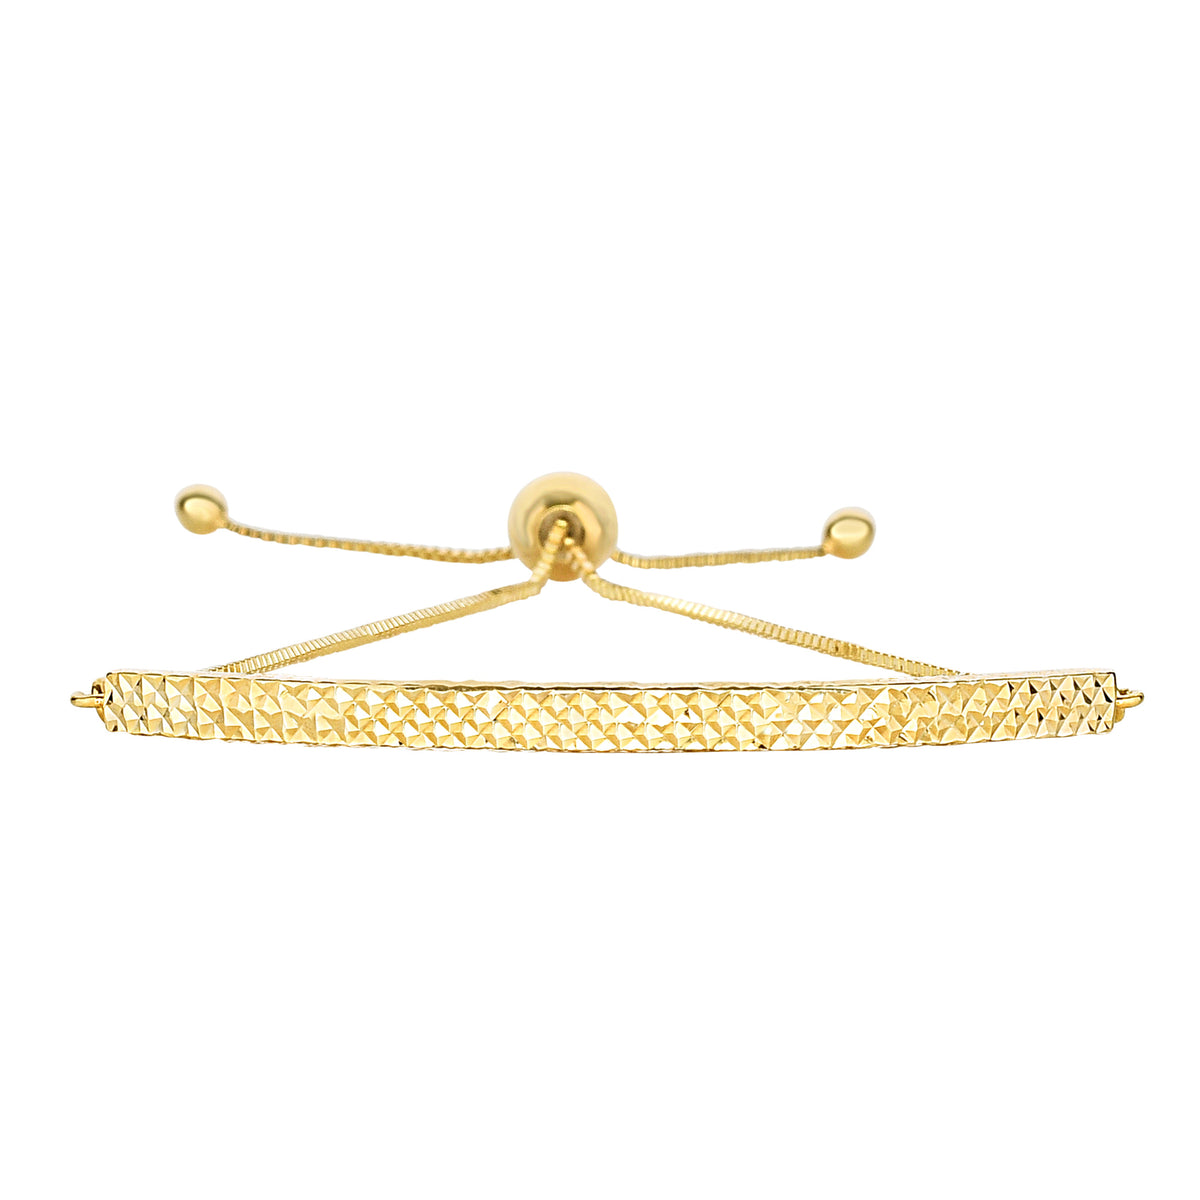 14K gult guld diamantskuret böjt stångelement förankrat på boxkedja justerbart armband, 9,25" fina designersmycken för män och kvinnor